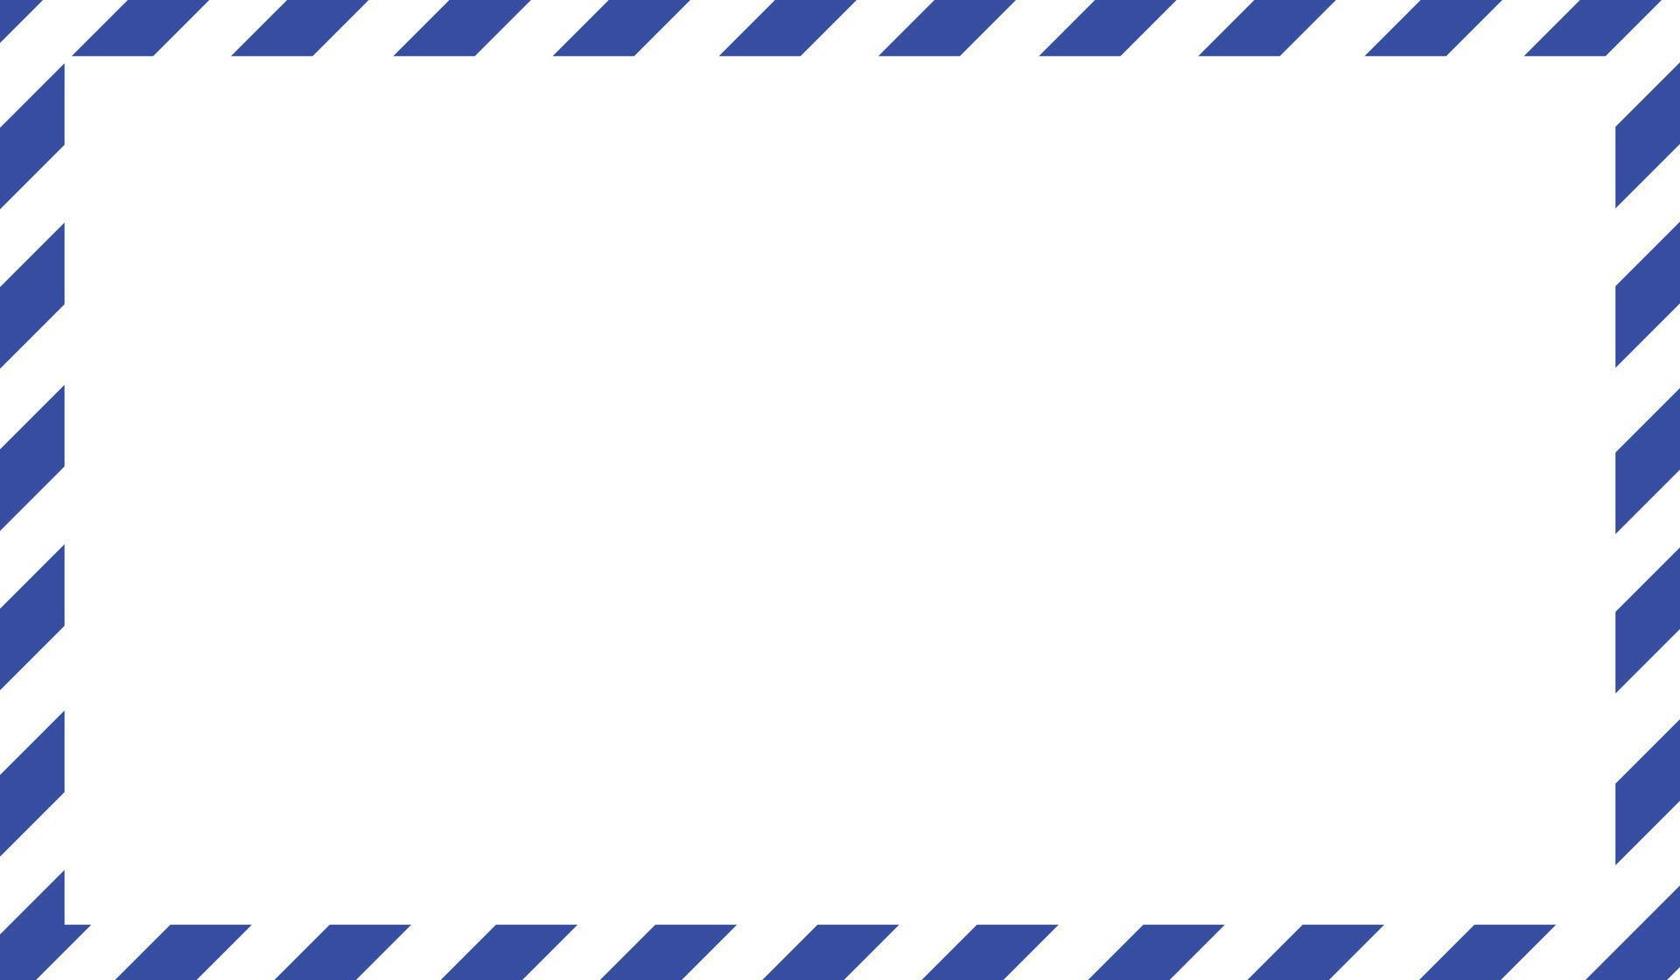 Luftpostumschlag Rahmen. internationale Vintage Briefgrenze. Retro-Luftpostpostkarte mit blauen Streifen. leere Korrespondenzpapiervorlage. leere klassische postnachrichtenillustration. vektor